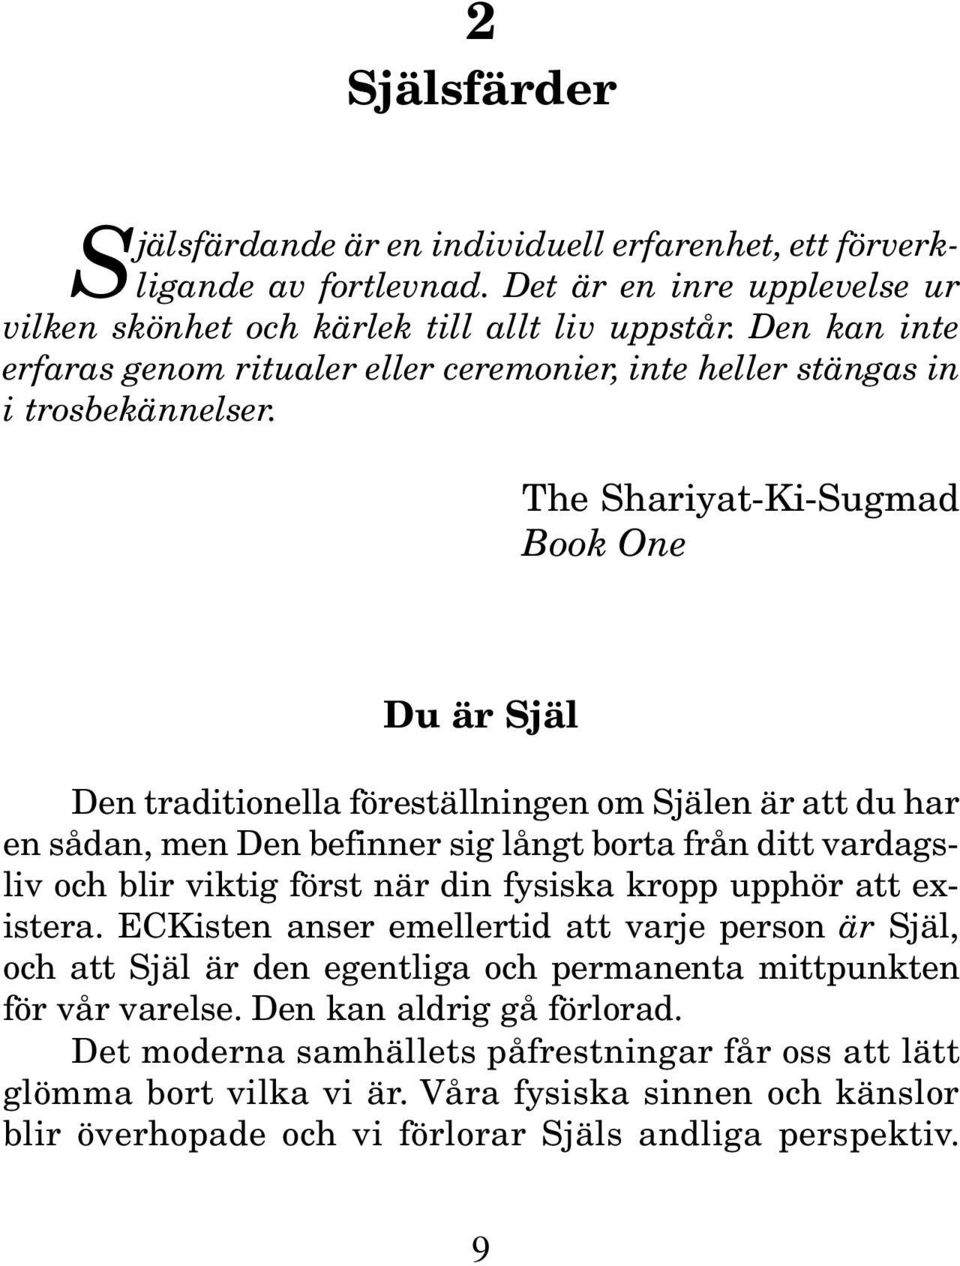 The Shariyat-Ki-Sugmad Book One Du är Själ Den traditionella föreställningen om Själen är att du har en sådan, men Den befinner sig långt borta från ditt vardagsliv och blir viktig först när din